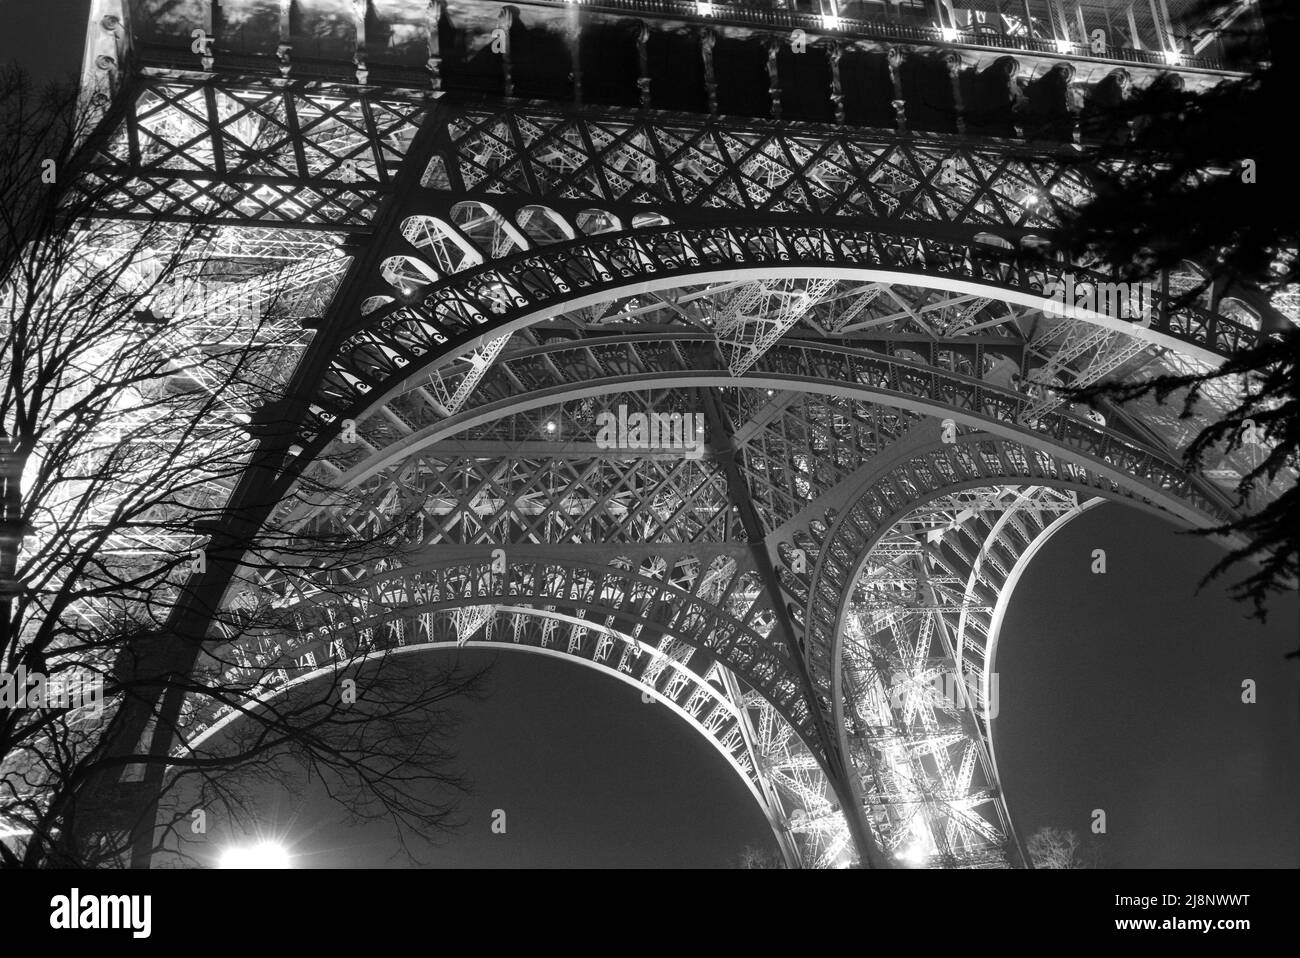 Un dettaglio della Torre Eiffel visto dal basso, in ferro battuto fatto per sembrare un merletto. Foto Stock